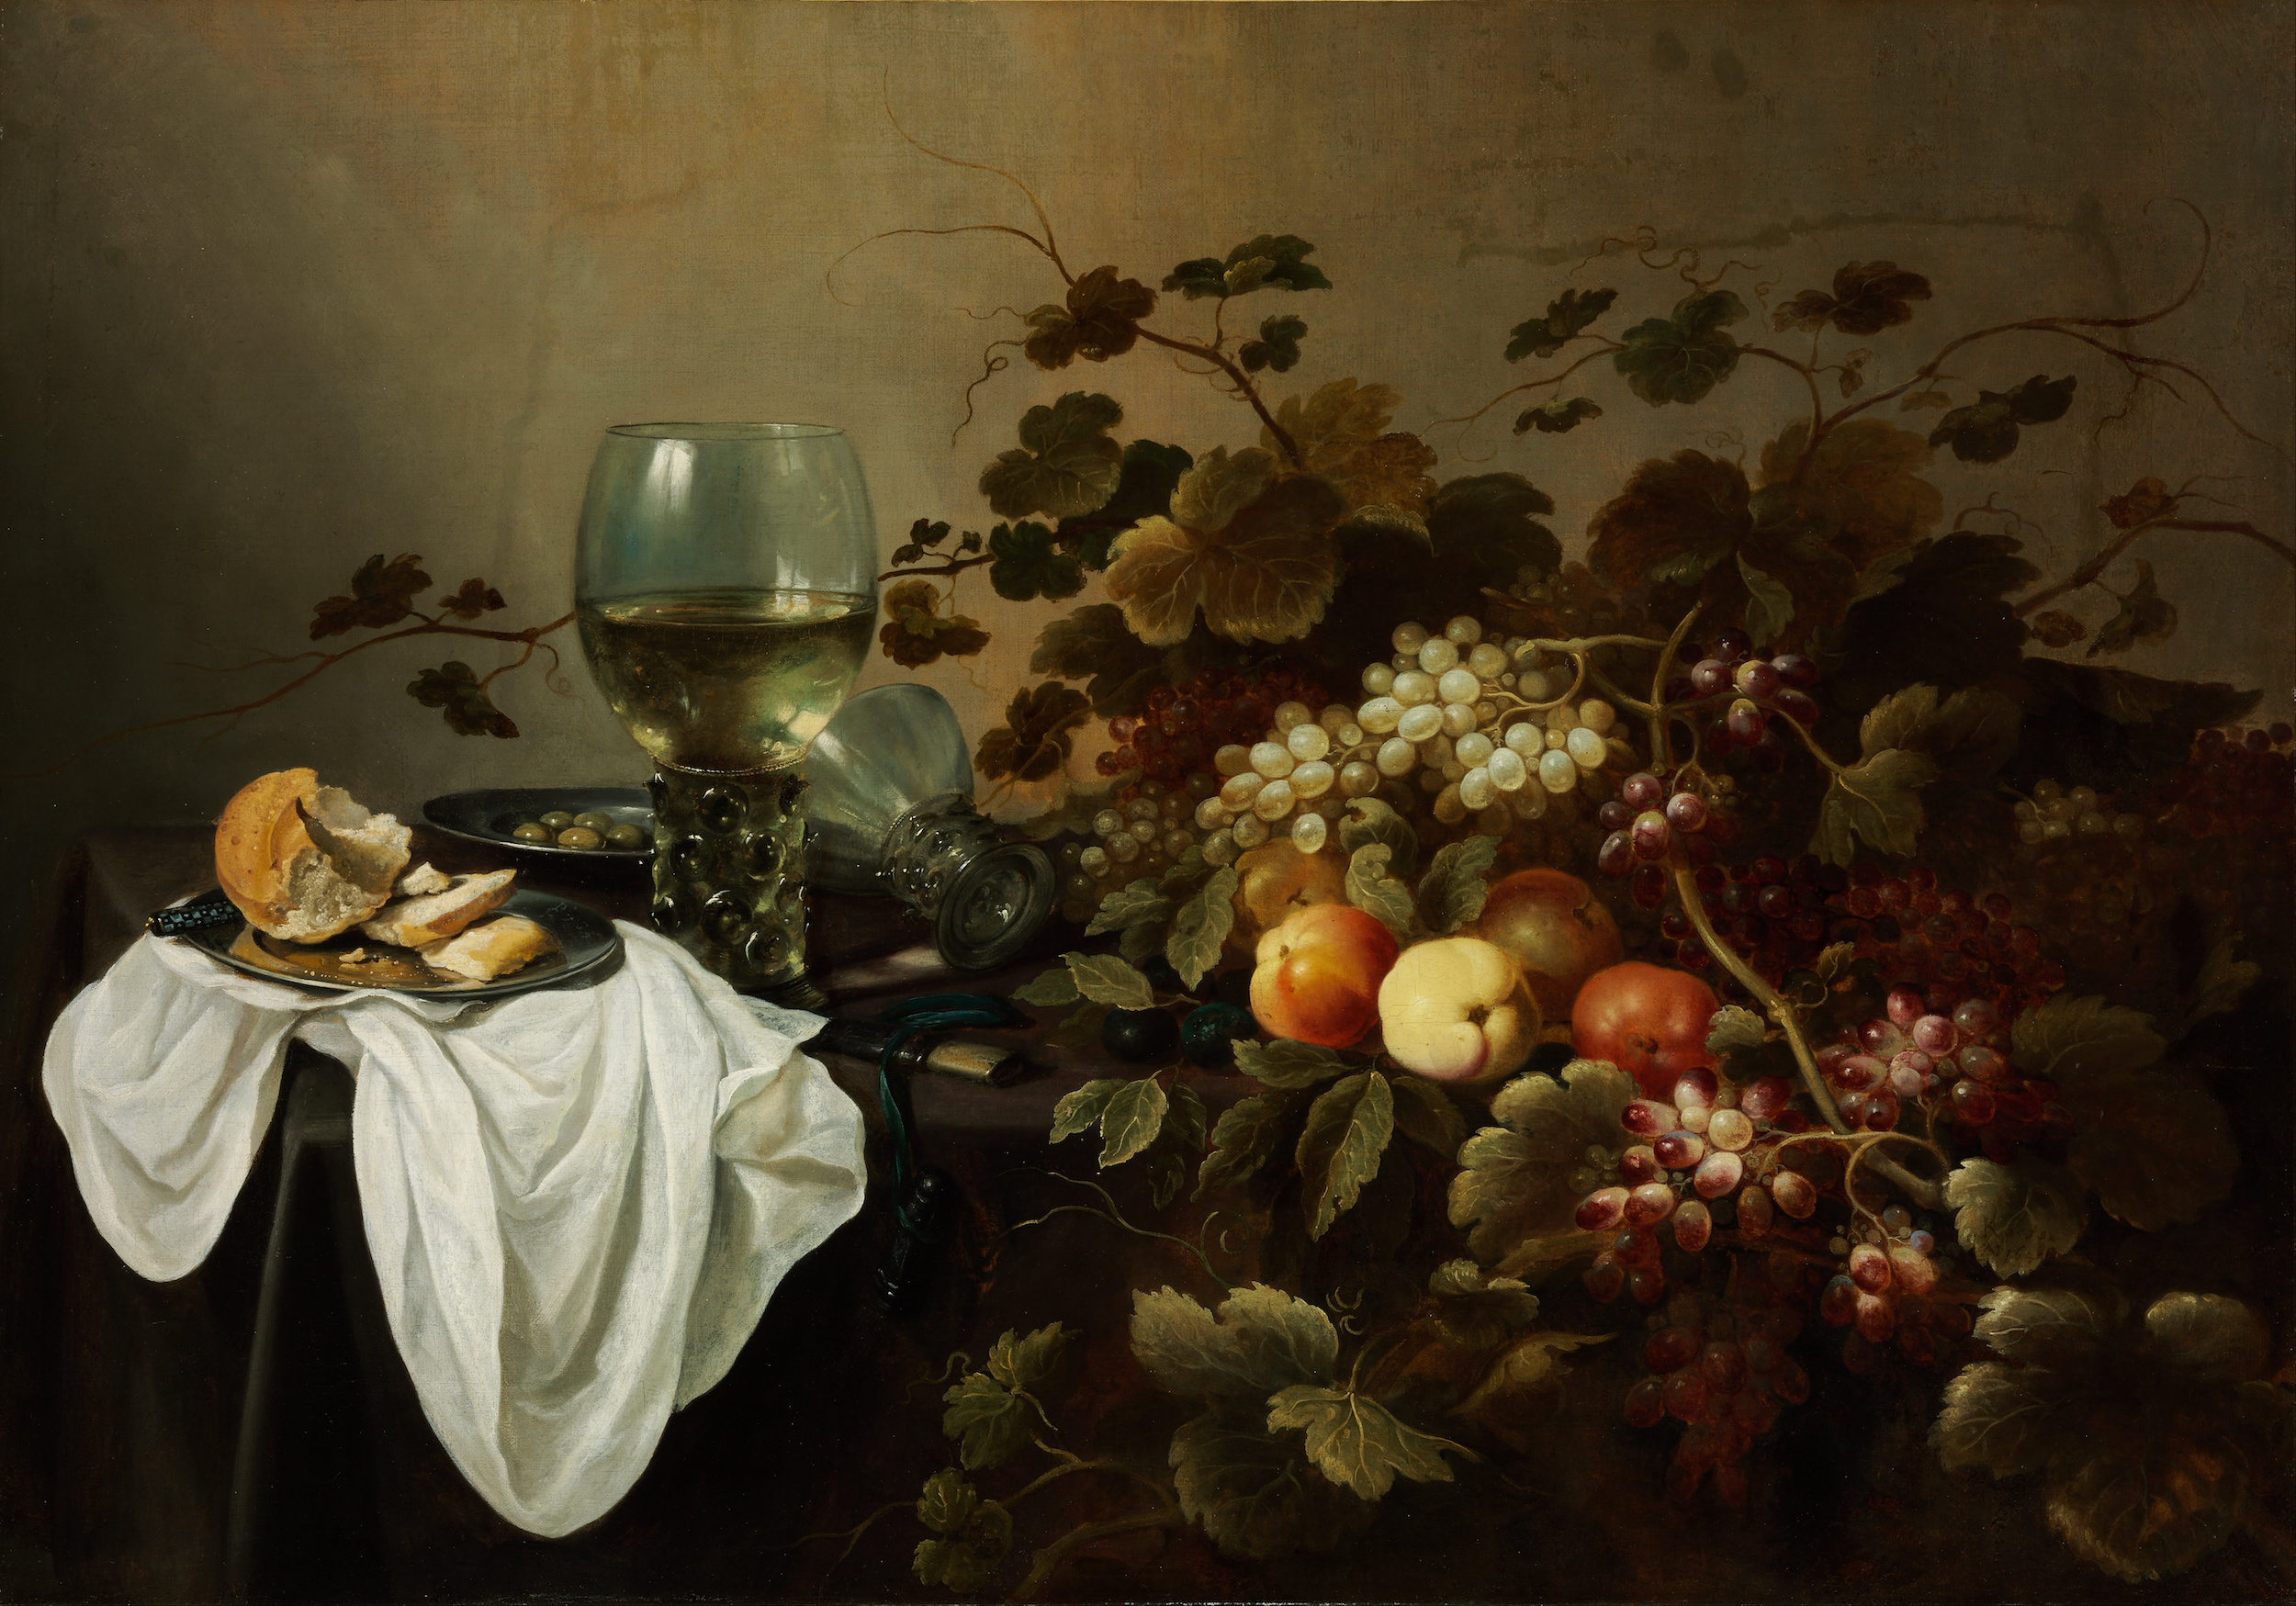 果物とレーマー杯のある静物画 by Pieter Claesz - 1644年 - 104.5 x 146 cm 